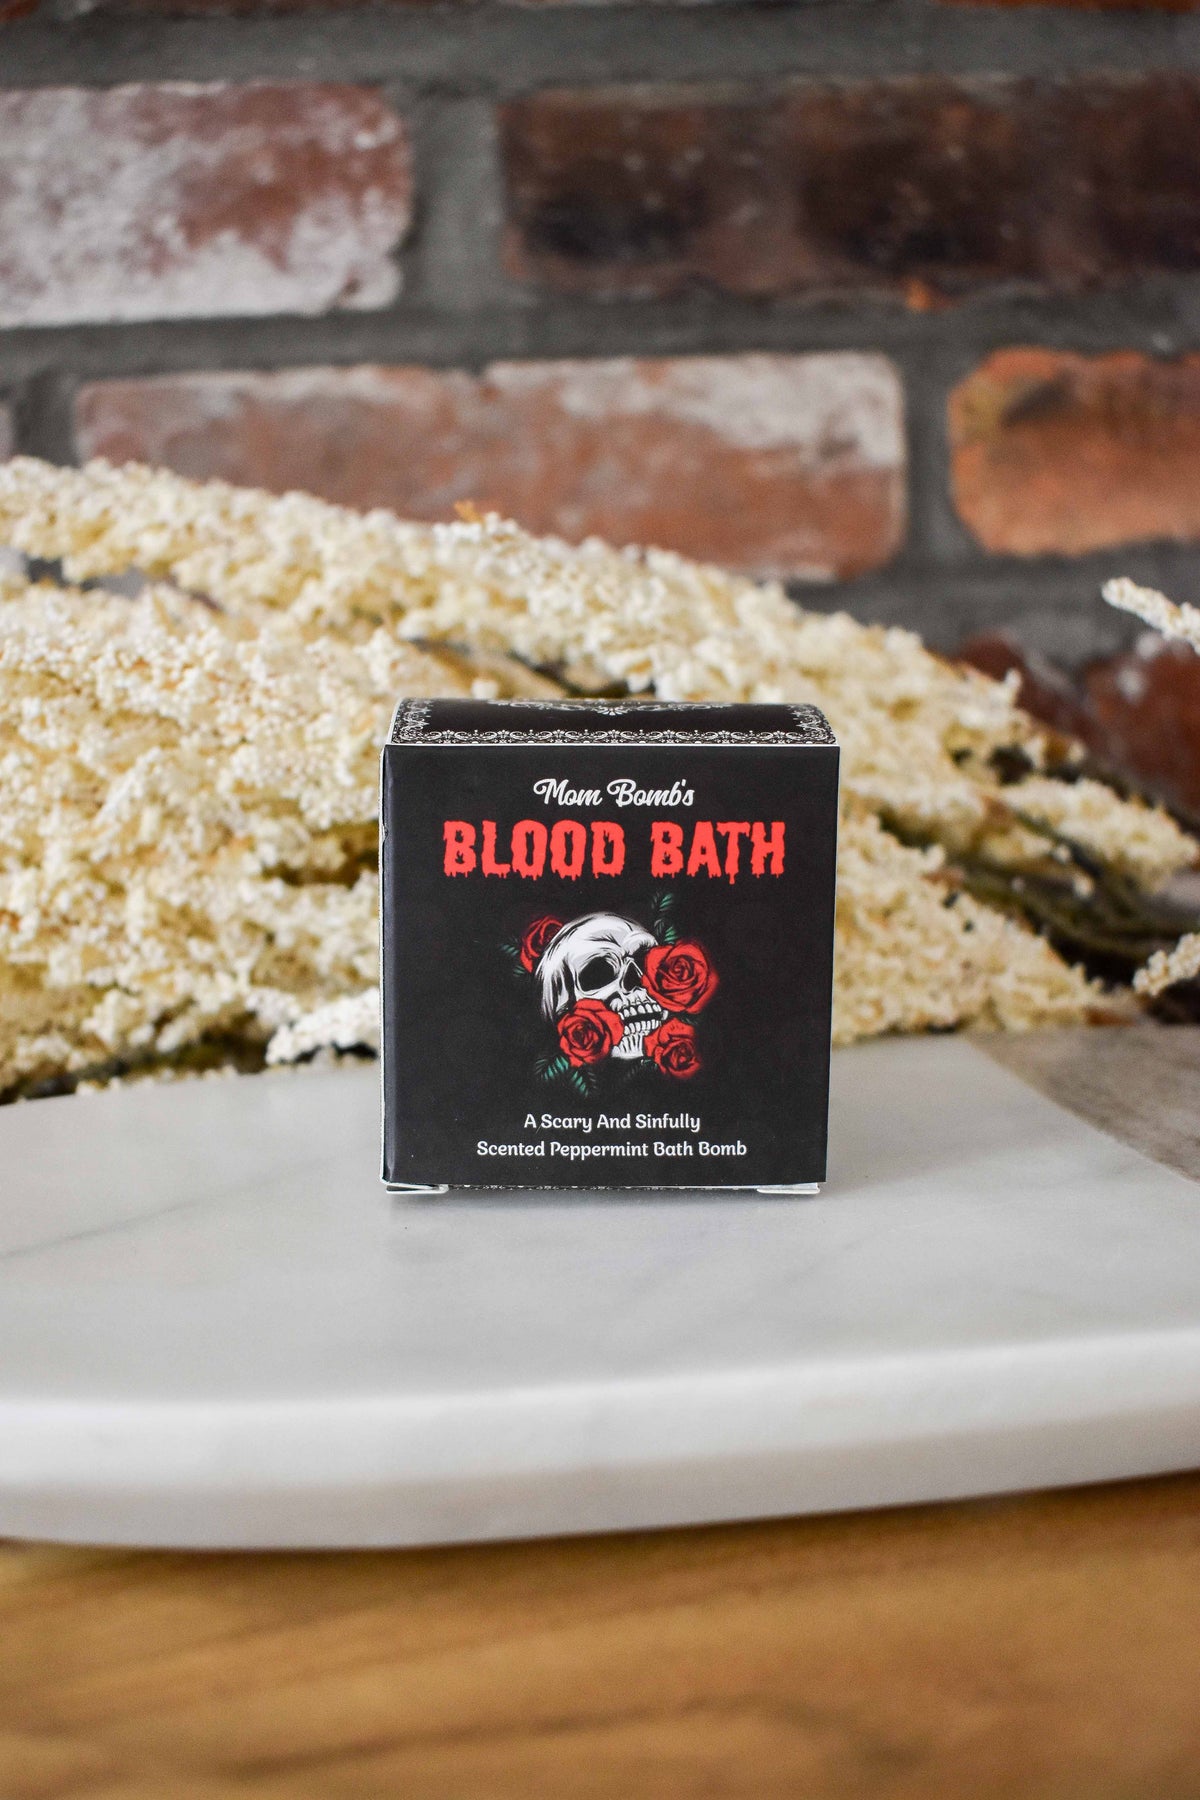 Soak Bath Bomb Making Kit 100% Natural & Vegan Ingredients Make